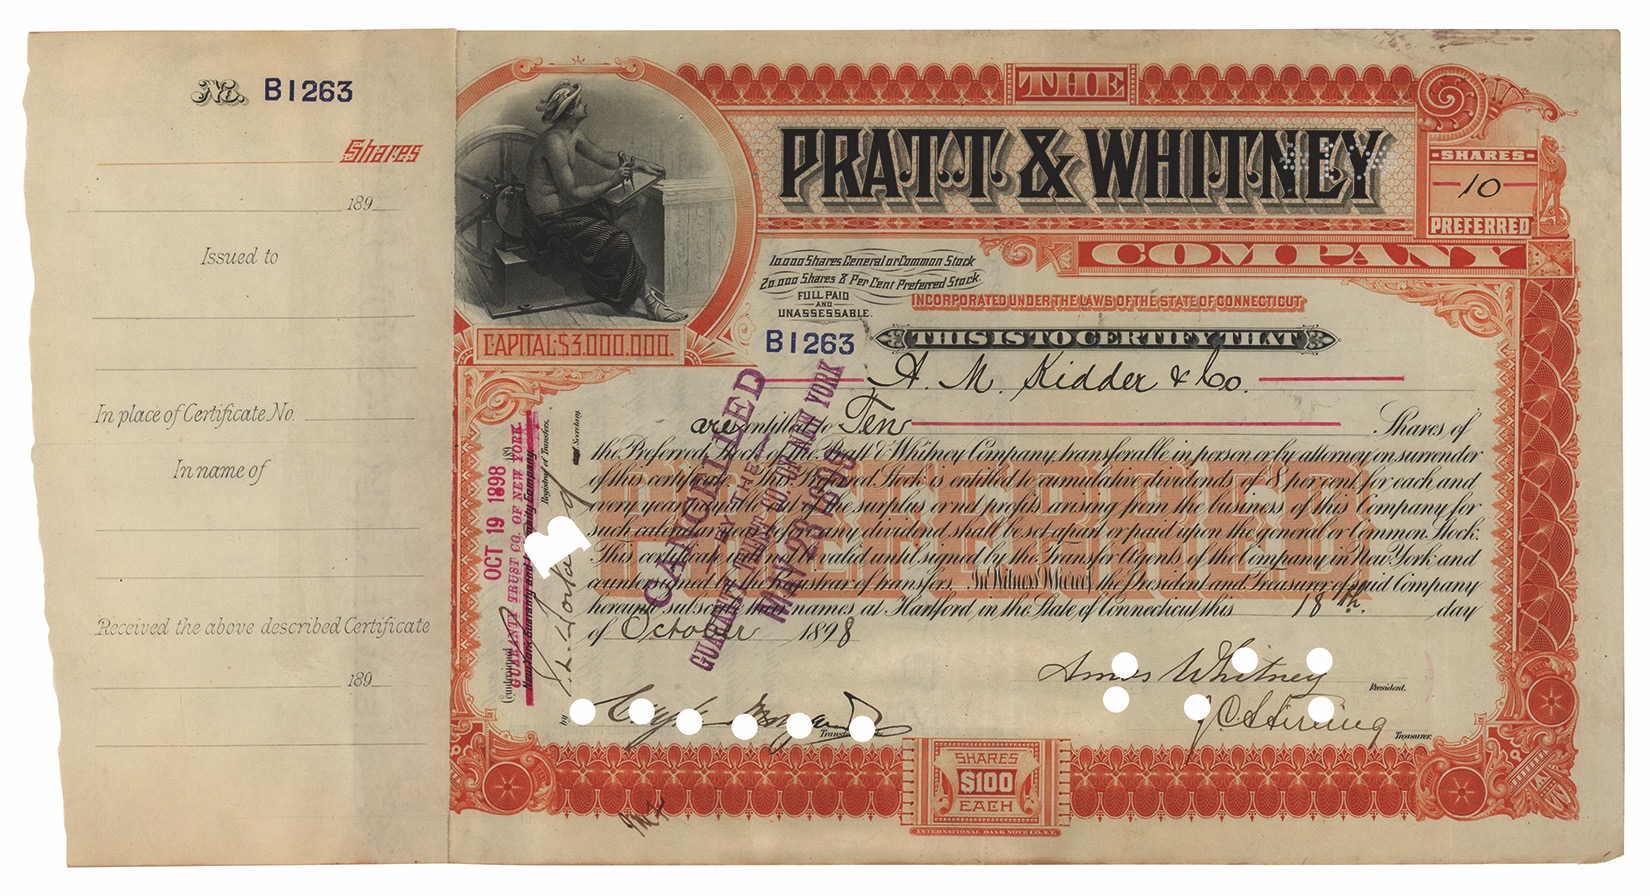 Lot #298 Pratt & Whitney: Francis Pratt and Amos Whitney (2) Documents Signed - Image 1